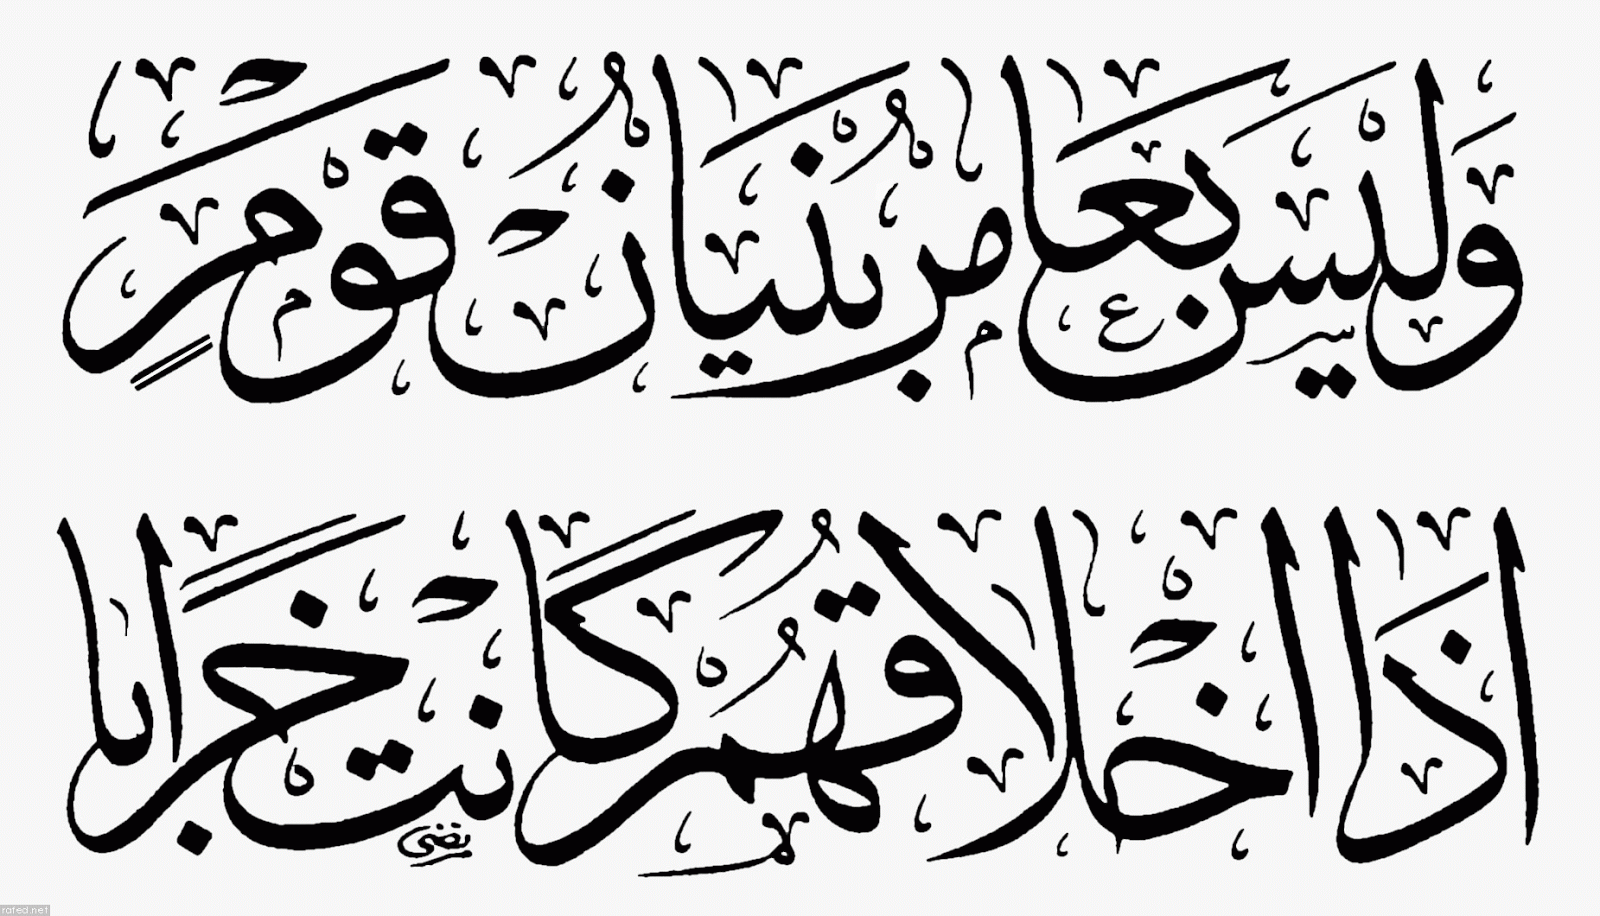 زخرفة عربية , كتابات مزخرفة بالرقعة - وداع وفراق